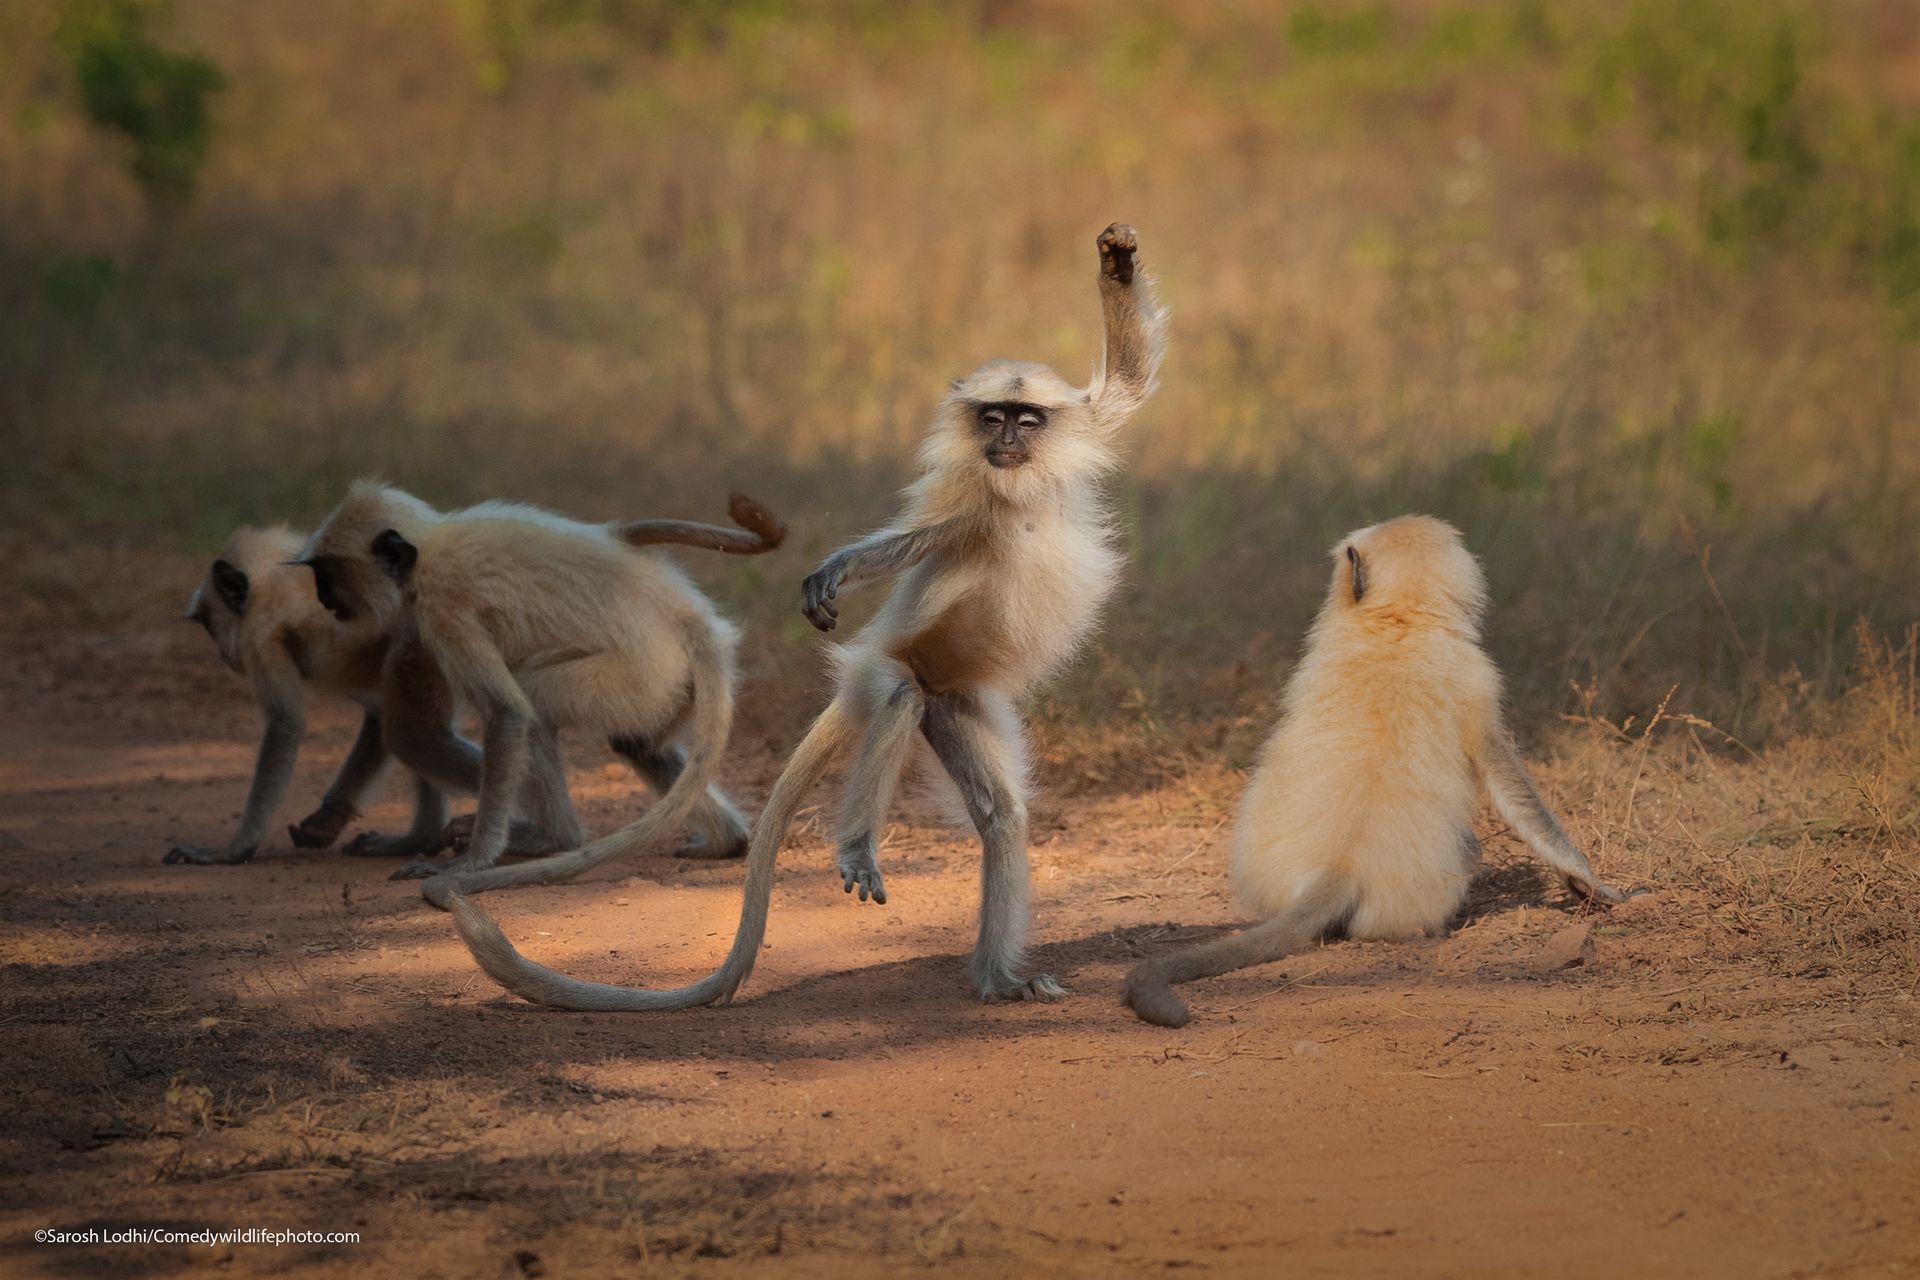 En apekatt med gulhvit pels, brune føtter og mørkt ansikt står på en fot, med hendene i luften, foran flere andre apekatter, så det ser ut som at hen danser.